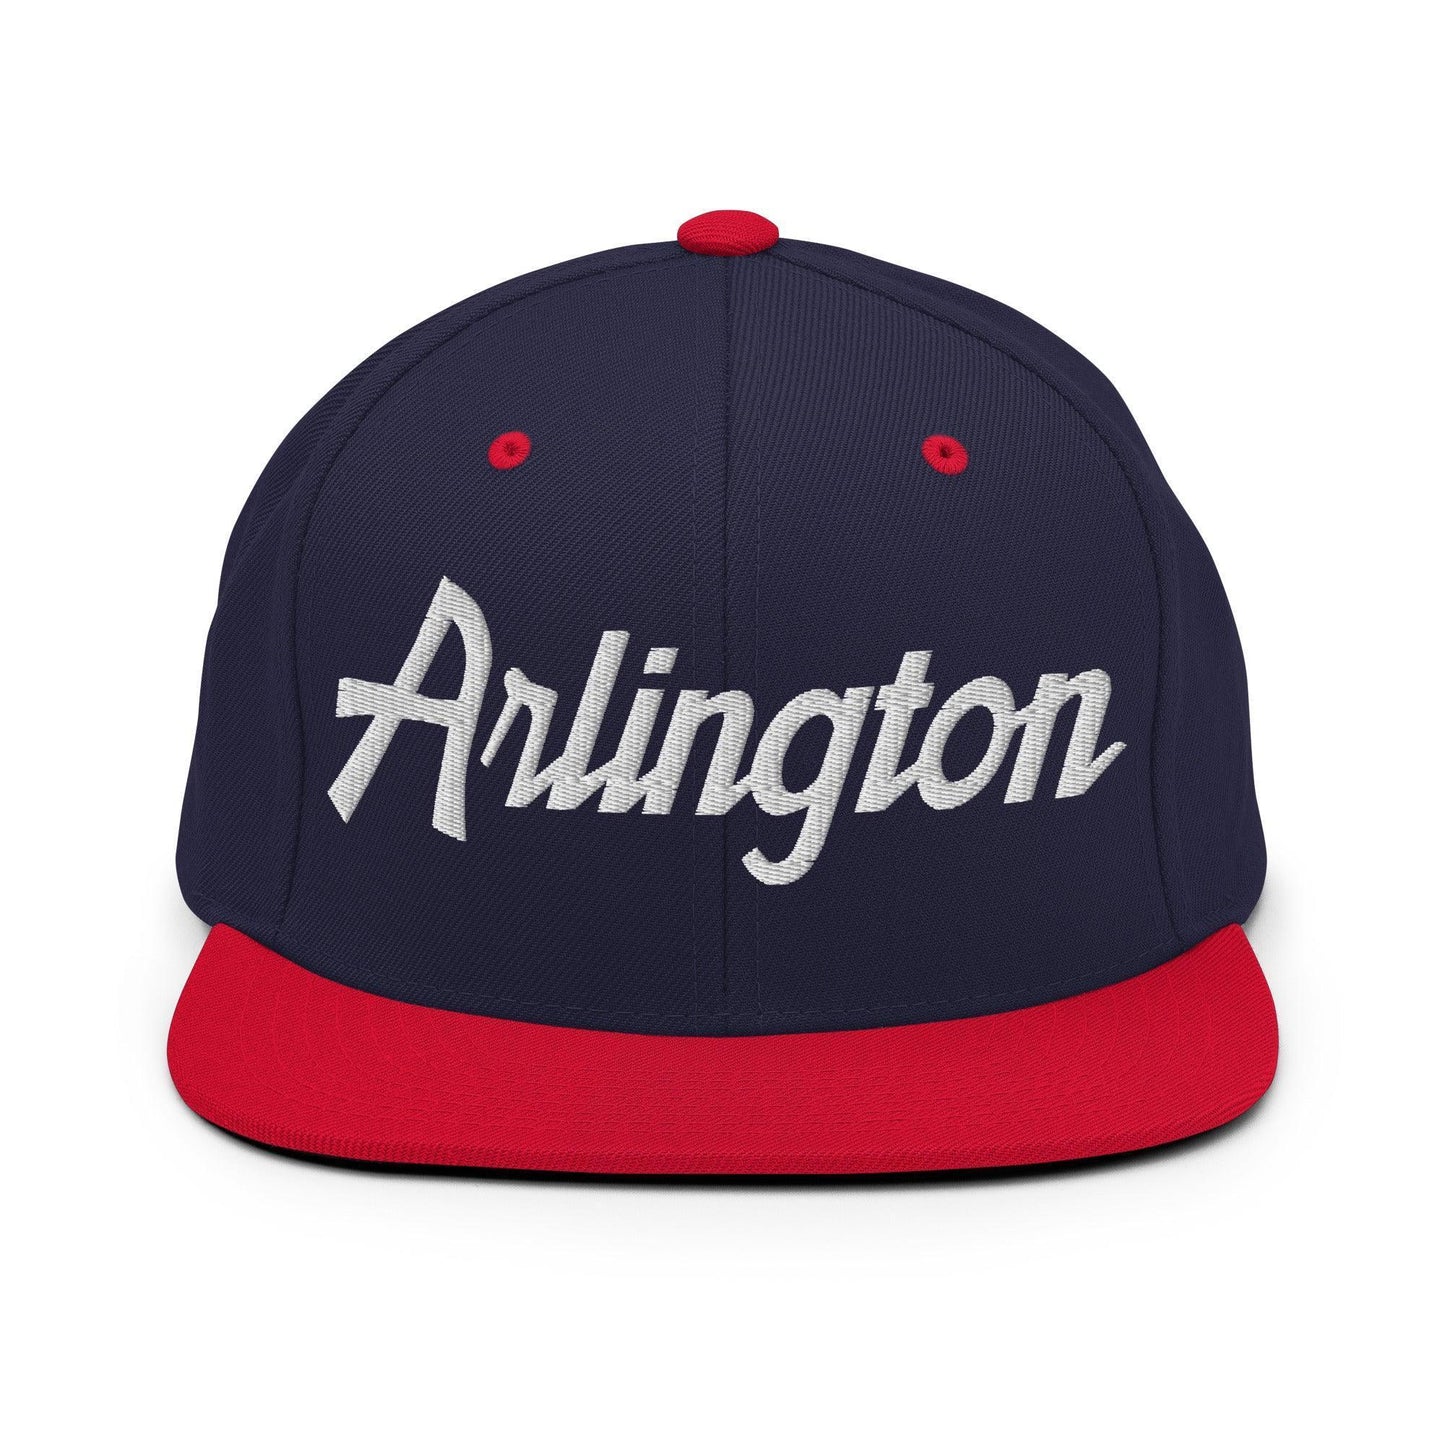 Arlington Script Snapback Hat Navy/ Red